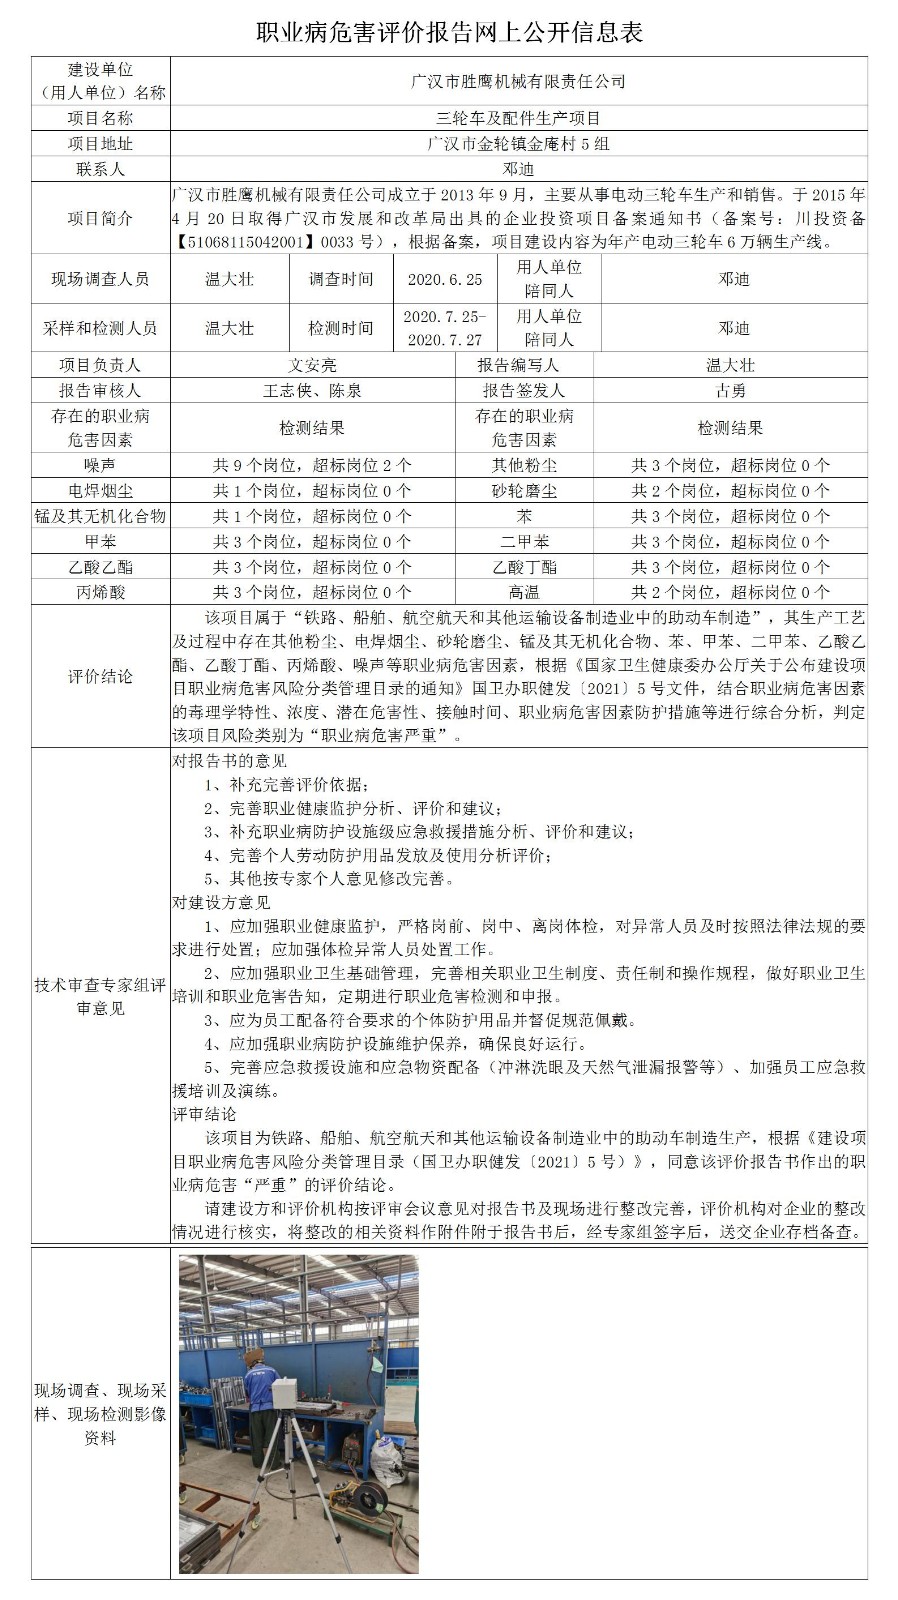 广汉市胜鹰机械有限责任公司三轮车及配件生产项目职业病危害控制效果评价